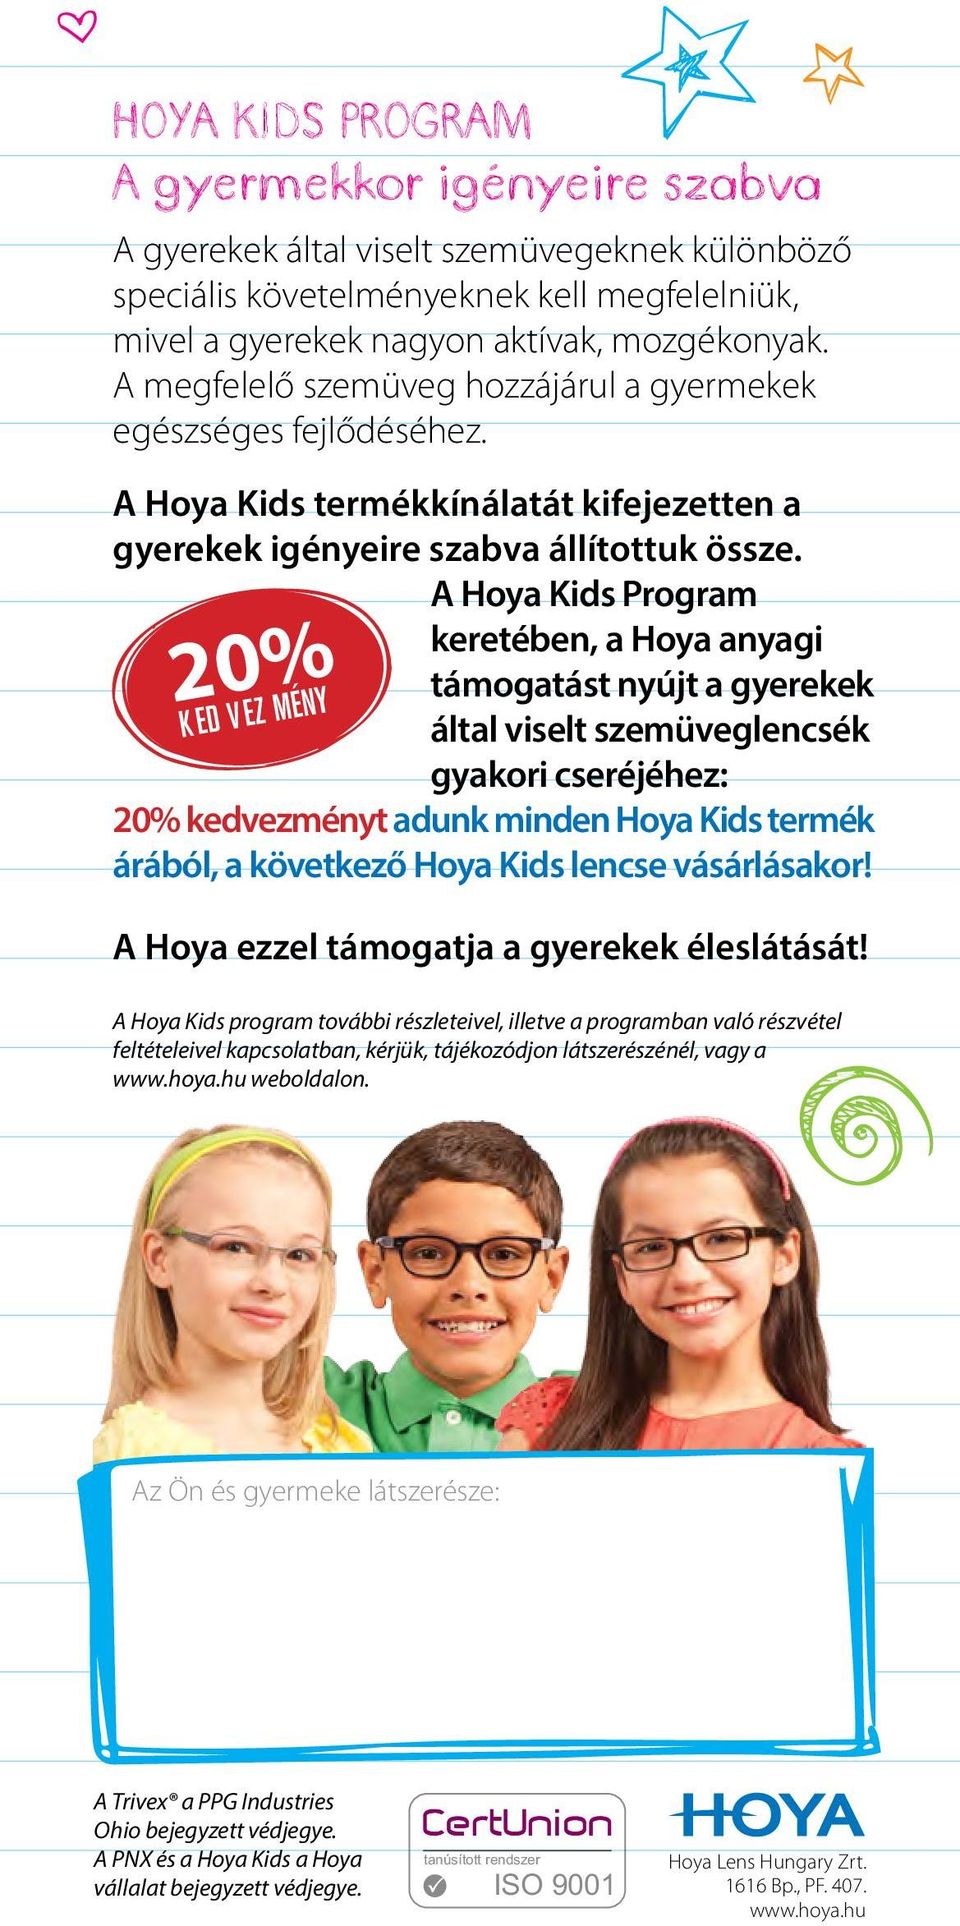 A Hoya Kids Program keretében, a Hoya anyagi 20% KED VEZ MÉNY támogatást nyújt a gyerekek által viselt szemüveglencsék gyakori cseréjéhez: 20% kedvezményt adunk minden Hoya Kids termék árából, a